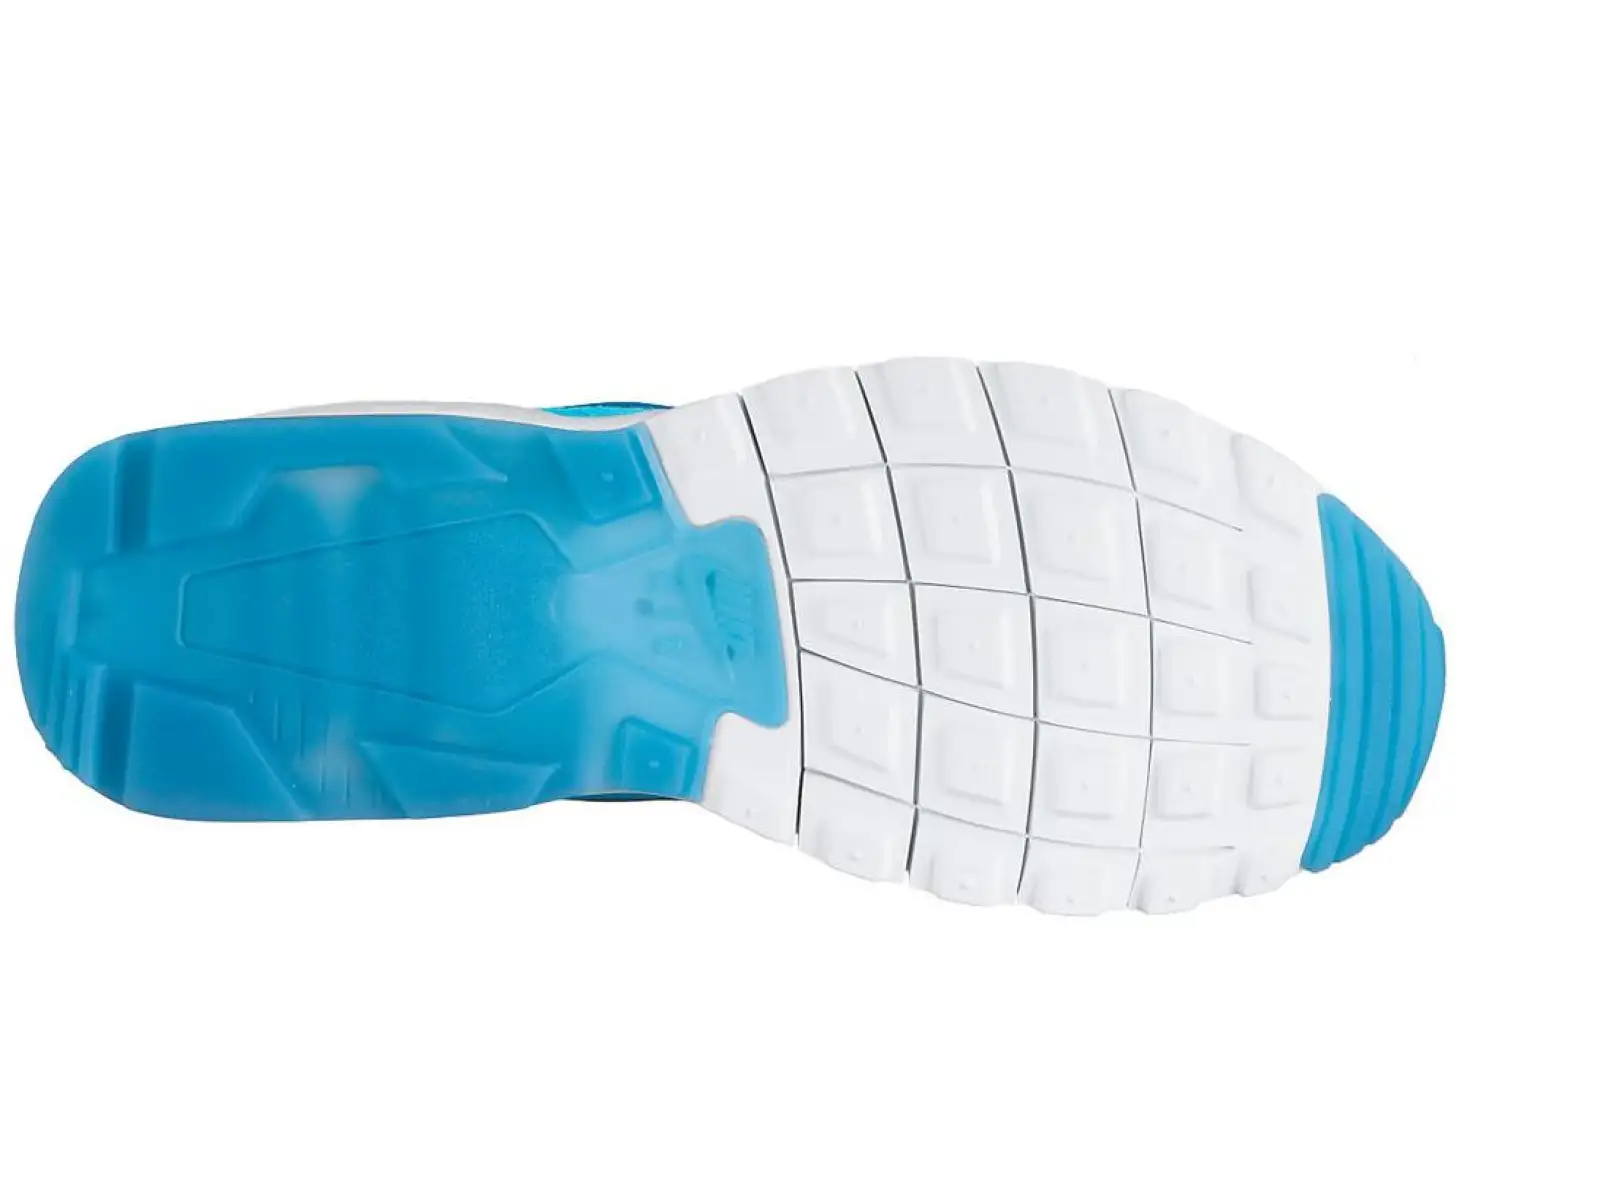 Nike Air Max Motion LW dámské sportovní boty tyrkysové